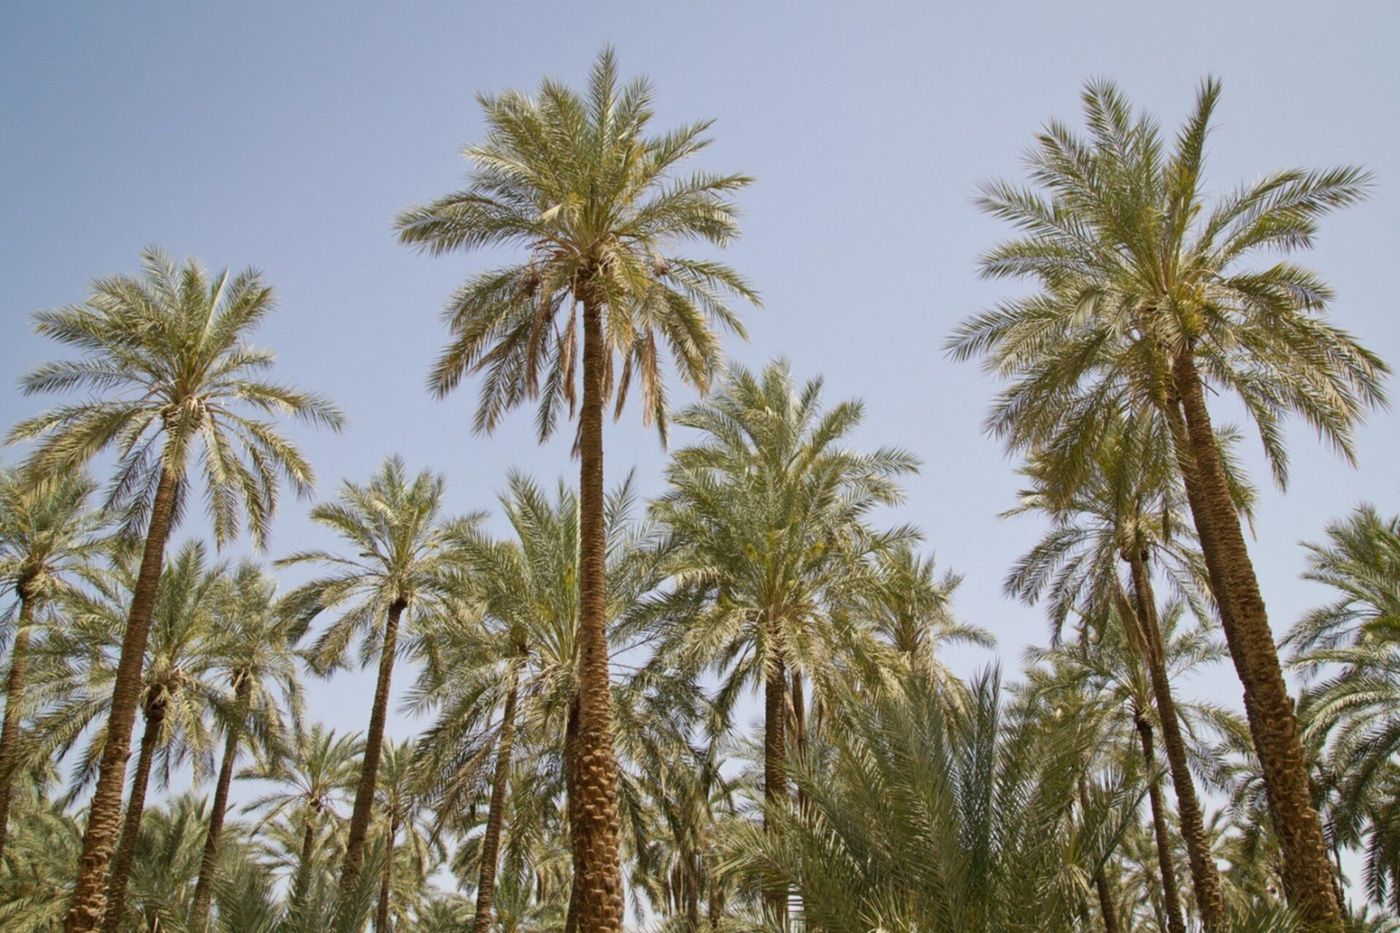 Tolga - Les palmiers dattiers